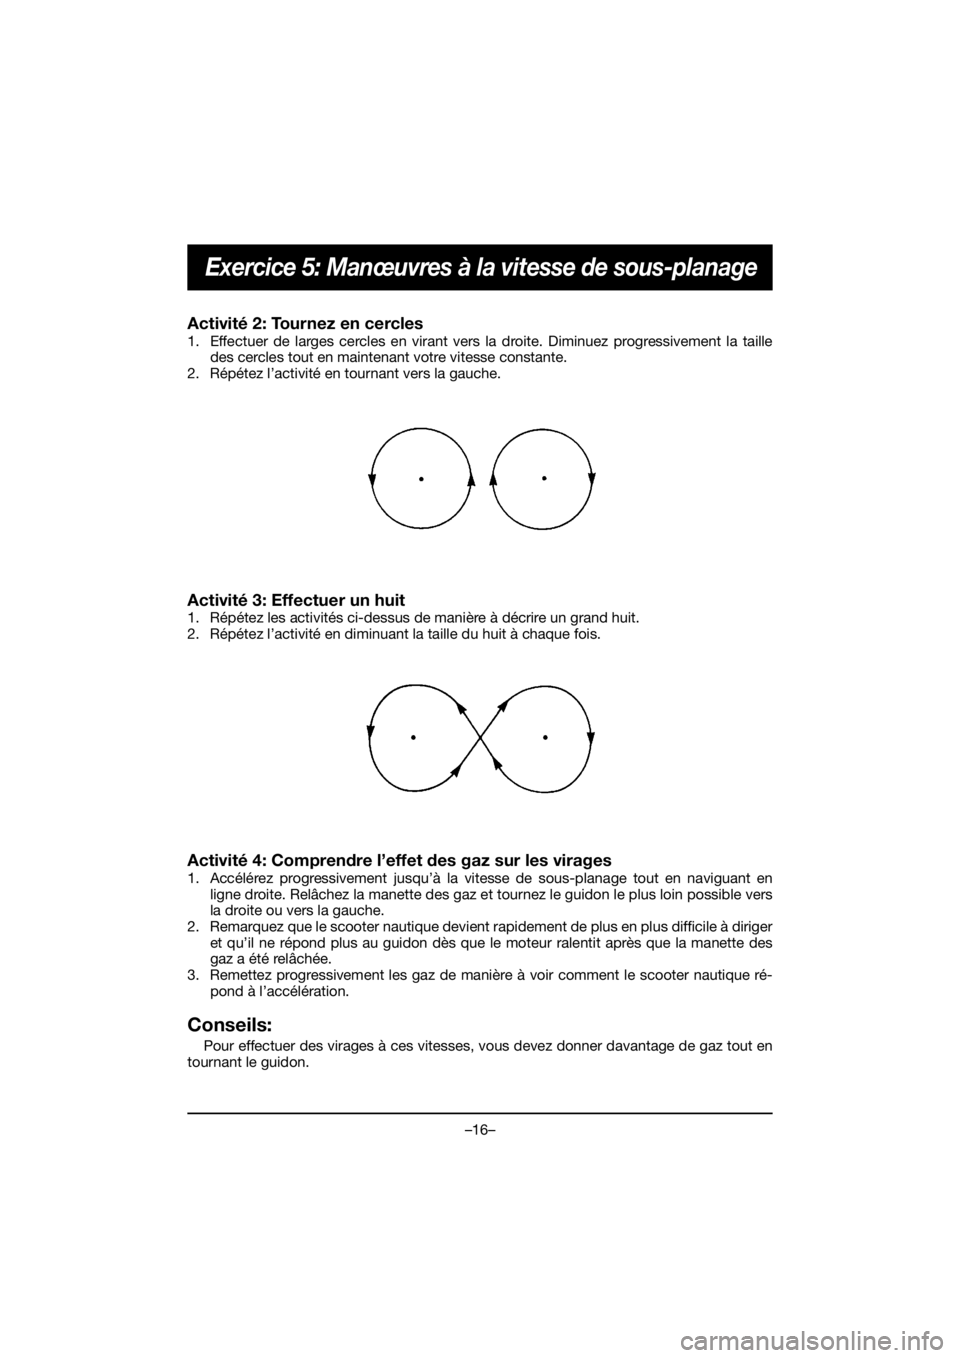 YAMAHA EX 2020 Service Manual –16–
Exercice 5: Manœuvres à la vitesse de sous-planage
Activité 2: Tournez en cercles 
1. Effectuer de larges cercles en virant vers la droite. Diminuez progressivement la taille
des cercles t